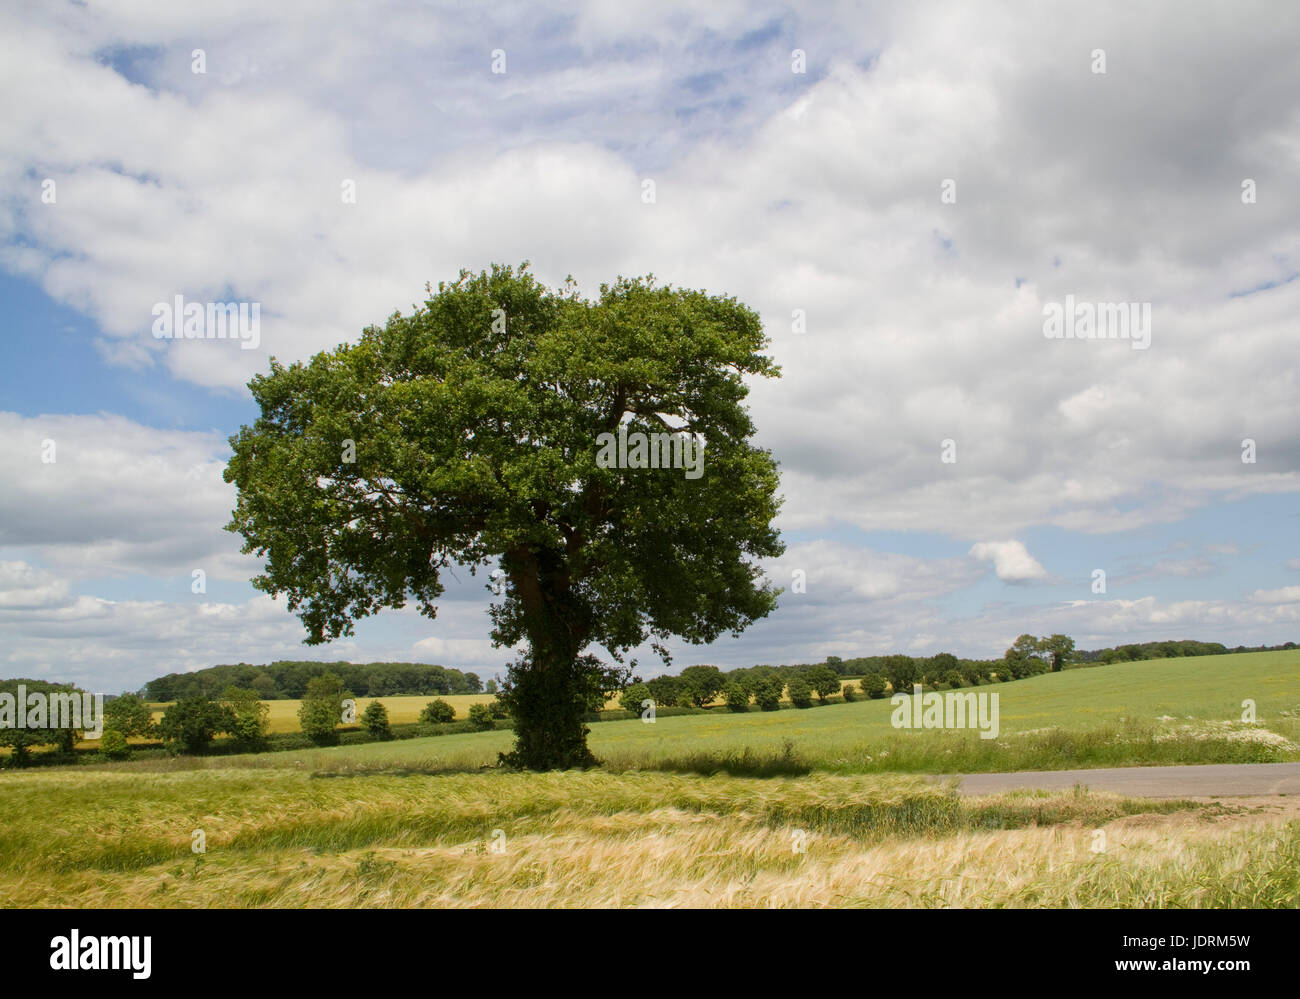 A single medium sized oak tree in a Suffolk landscape Stock Photo